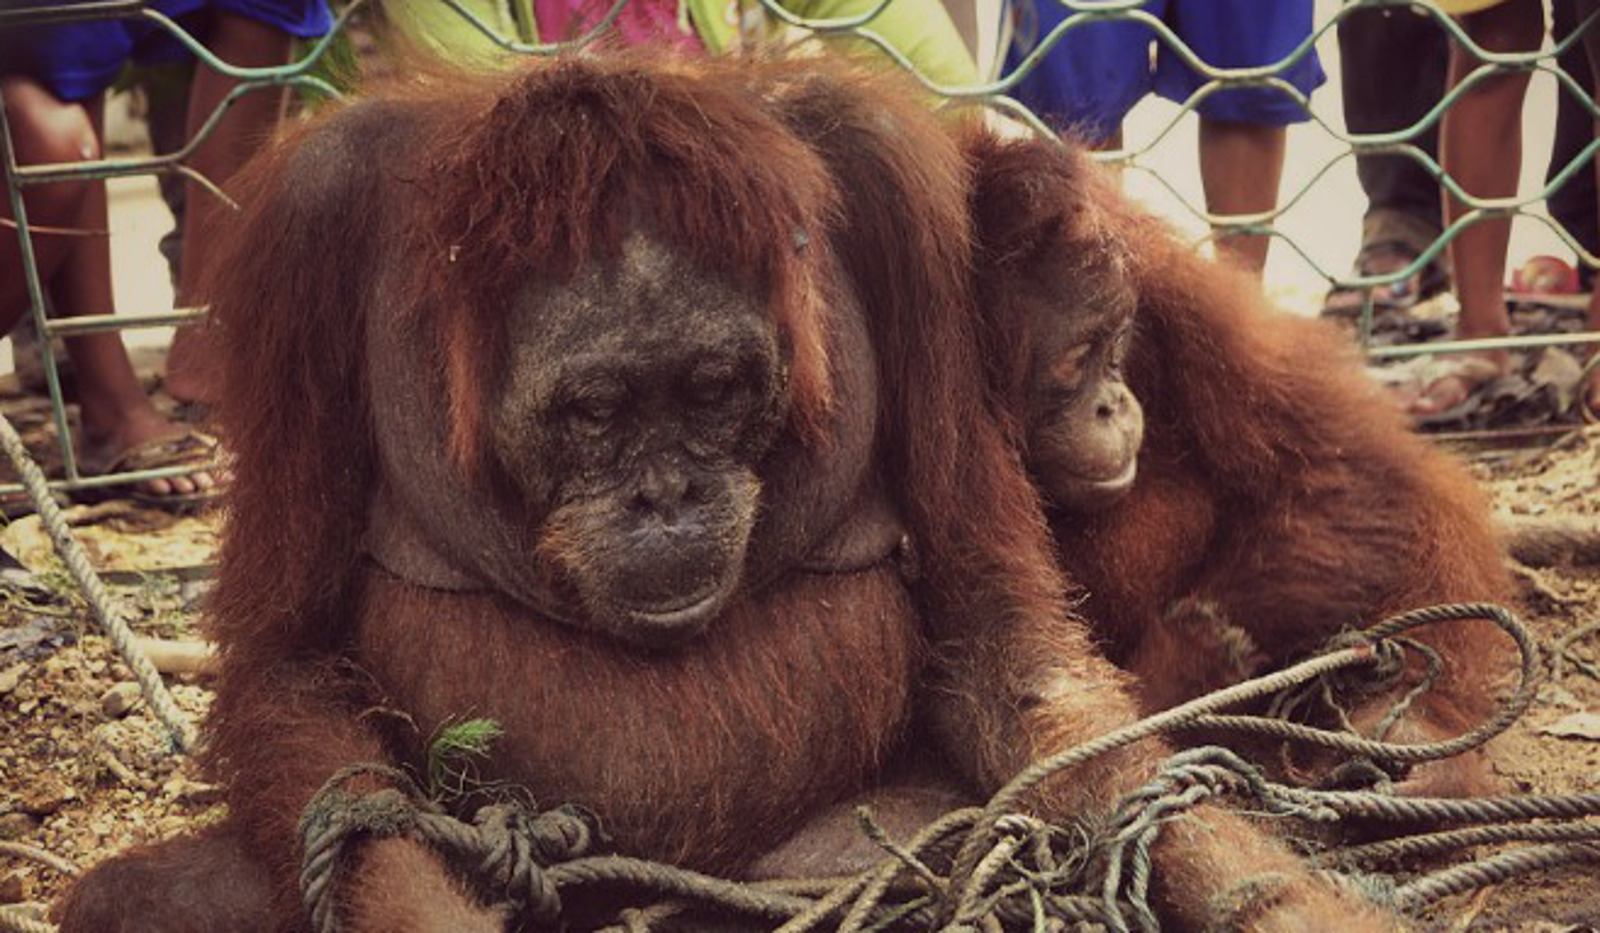 Where Are the World's Orangutans?